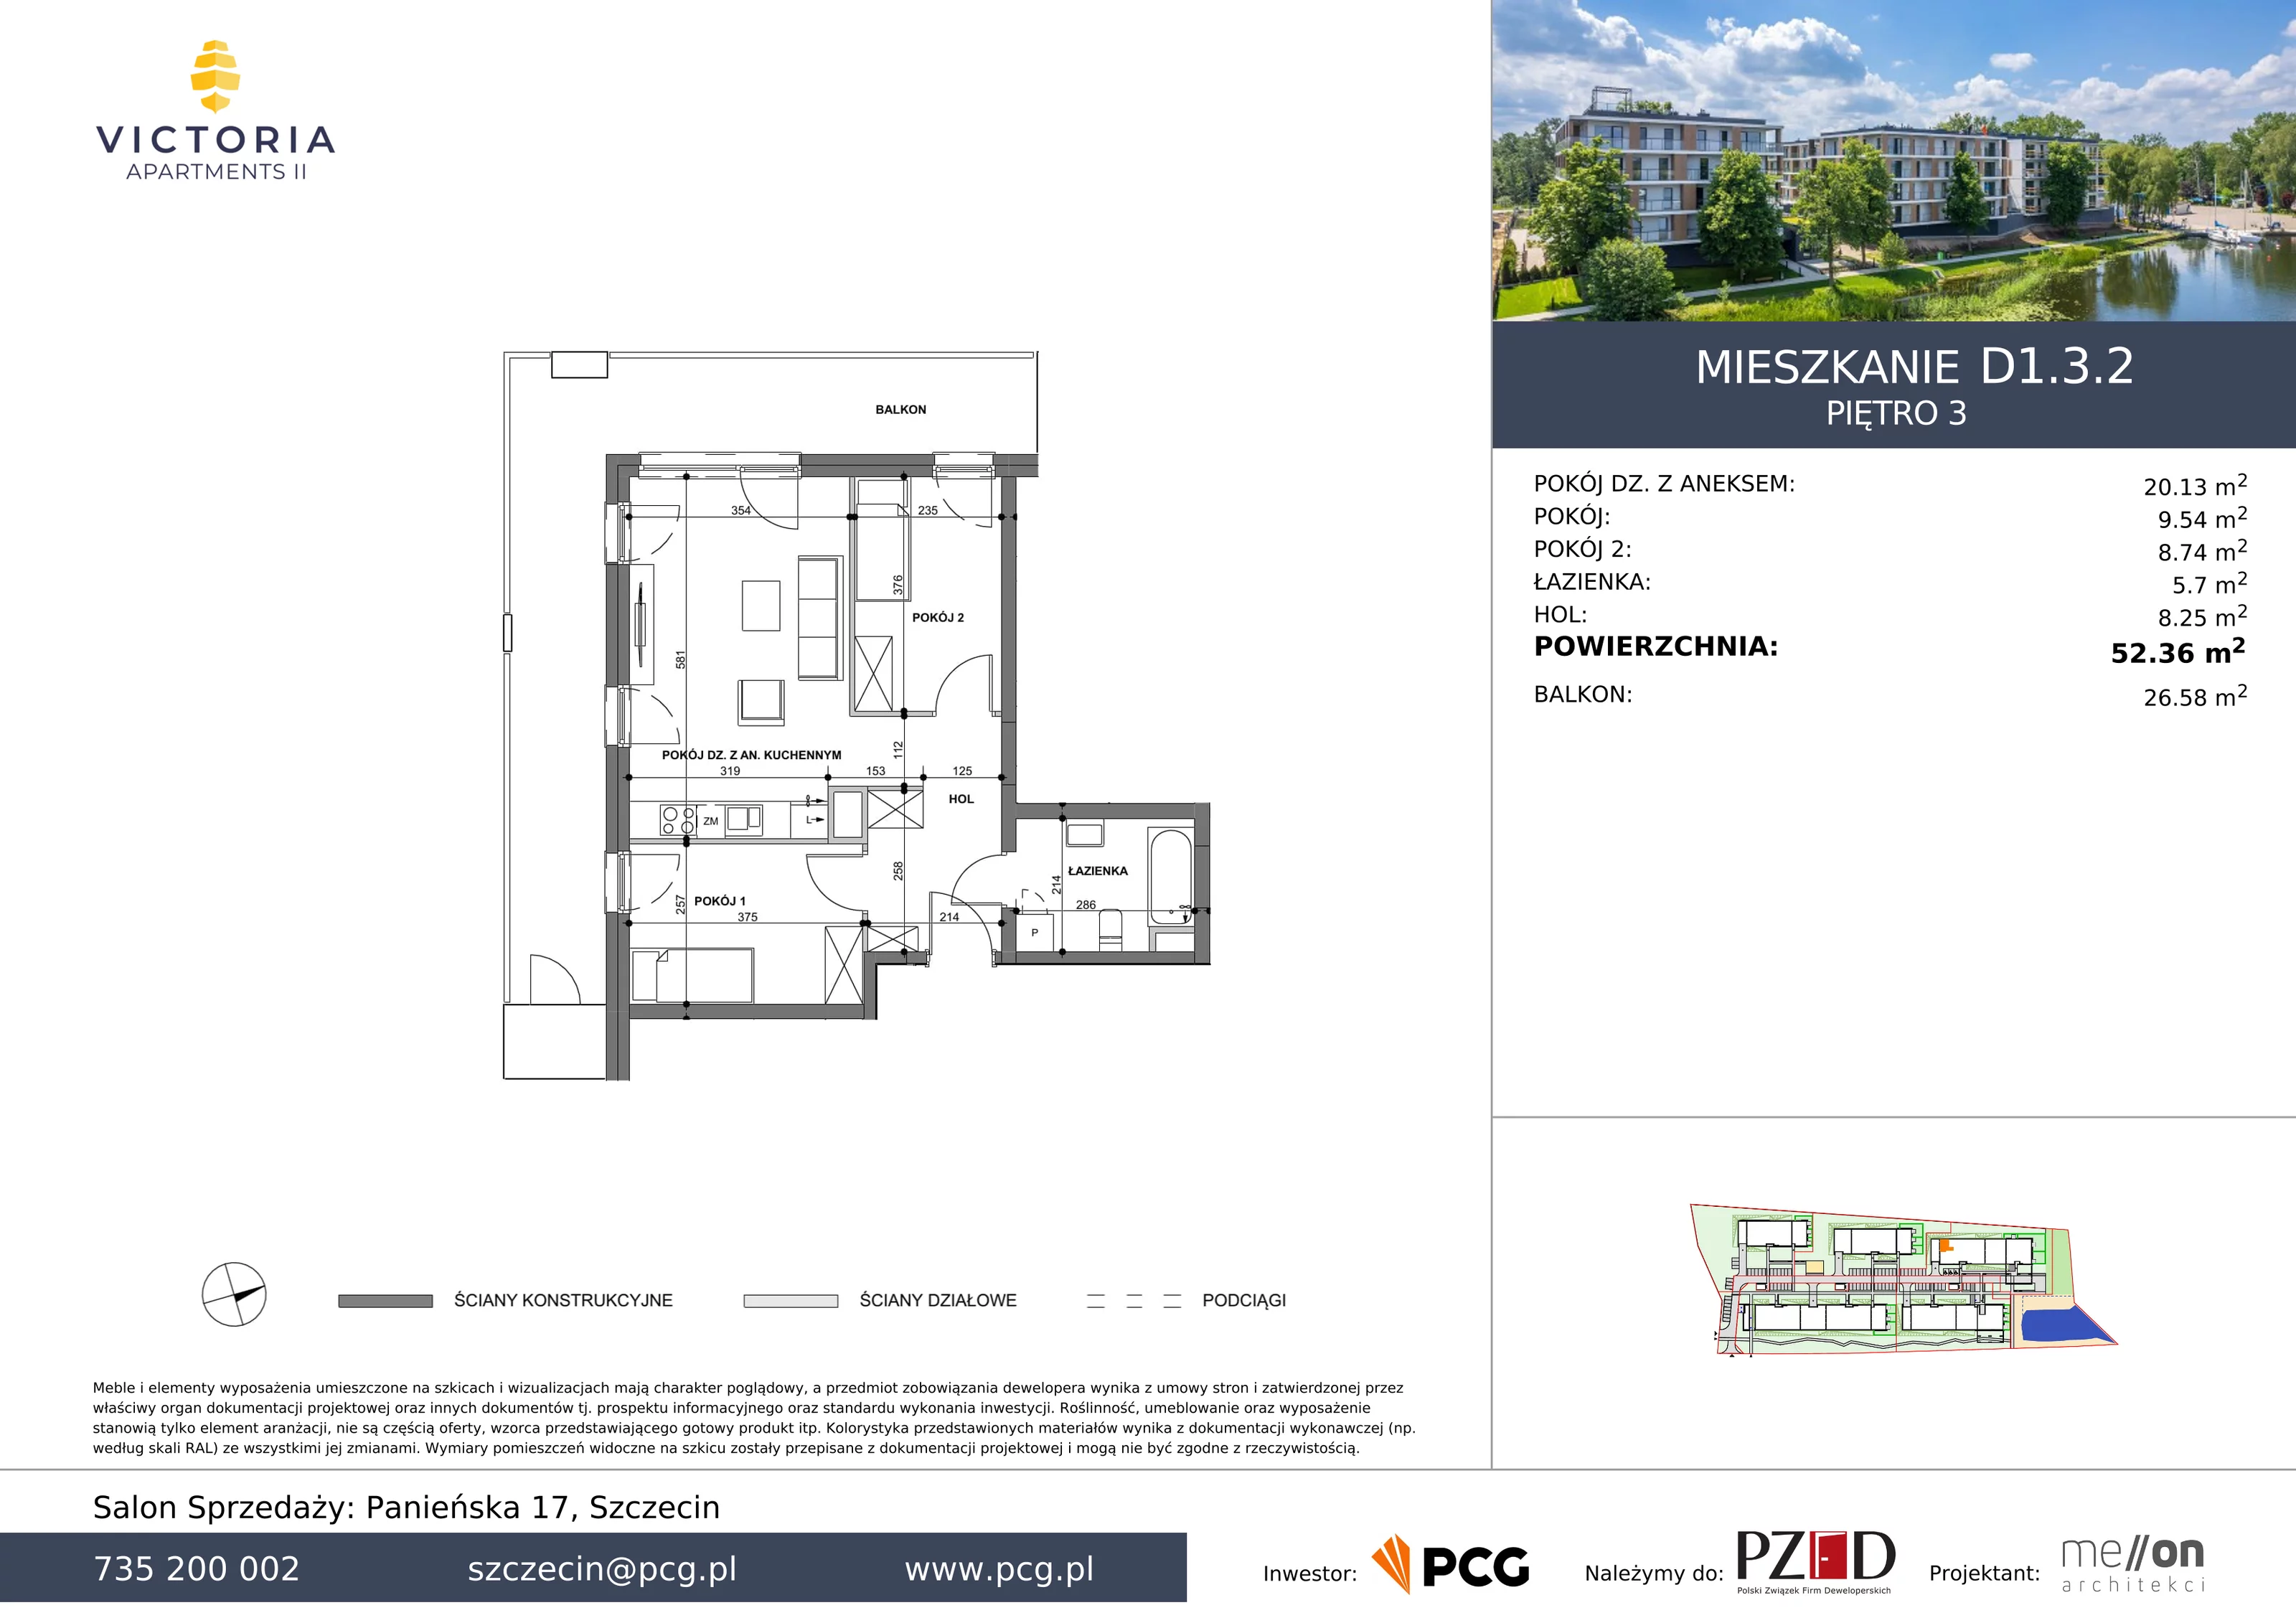 Apartament 52,36 m², piętro 3, oferta nr D1.3.2, Victoria Apartments II, Szczecin, Prawobrzeże, Dąbie, ul. Przestrzenna